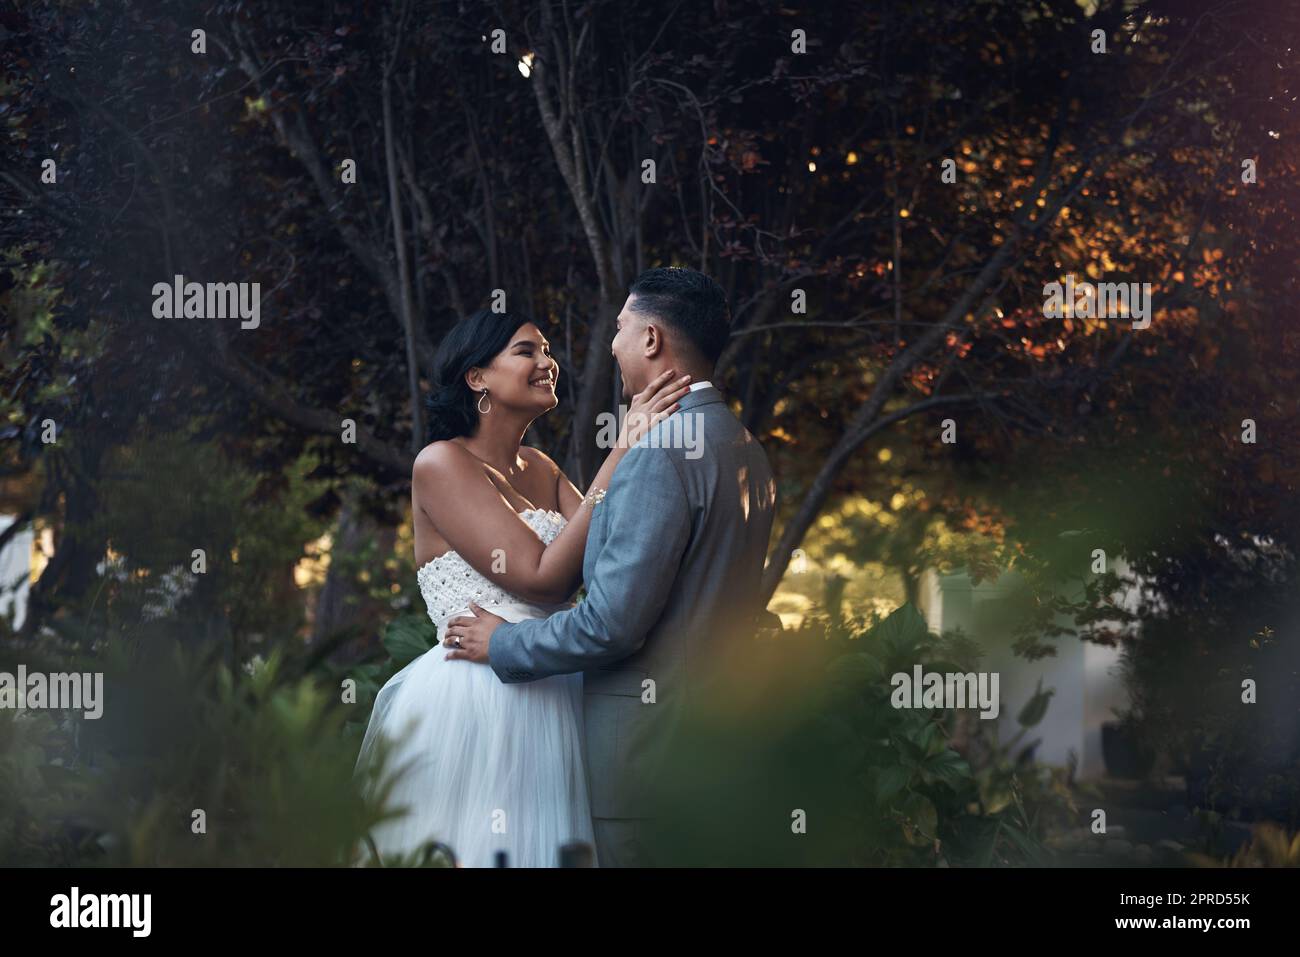 Dies ist der Beginn von etwas schönem. Ein liebevolles Paar, das an ihrem Hochzeitstag draußen steht. Stockfoto